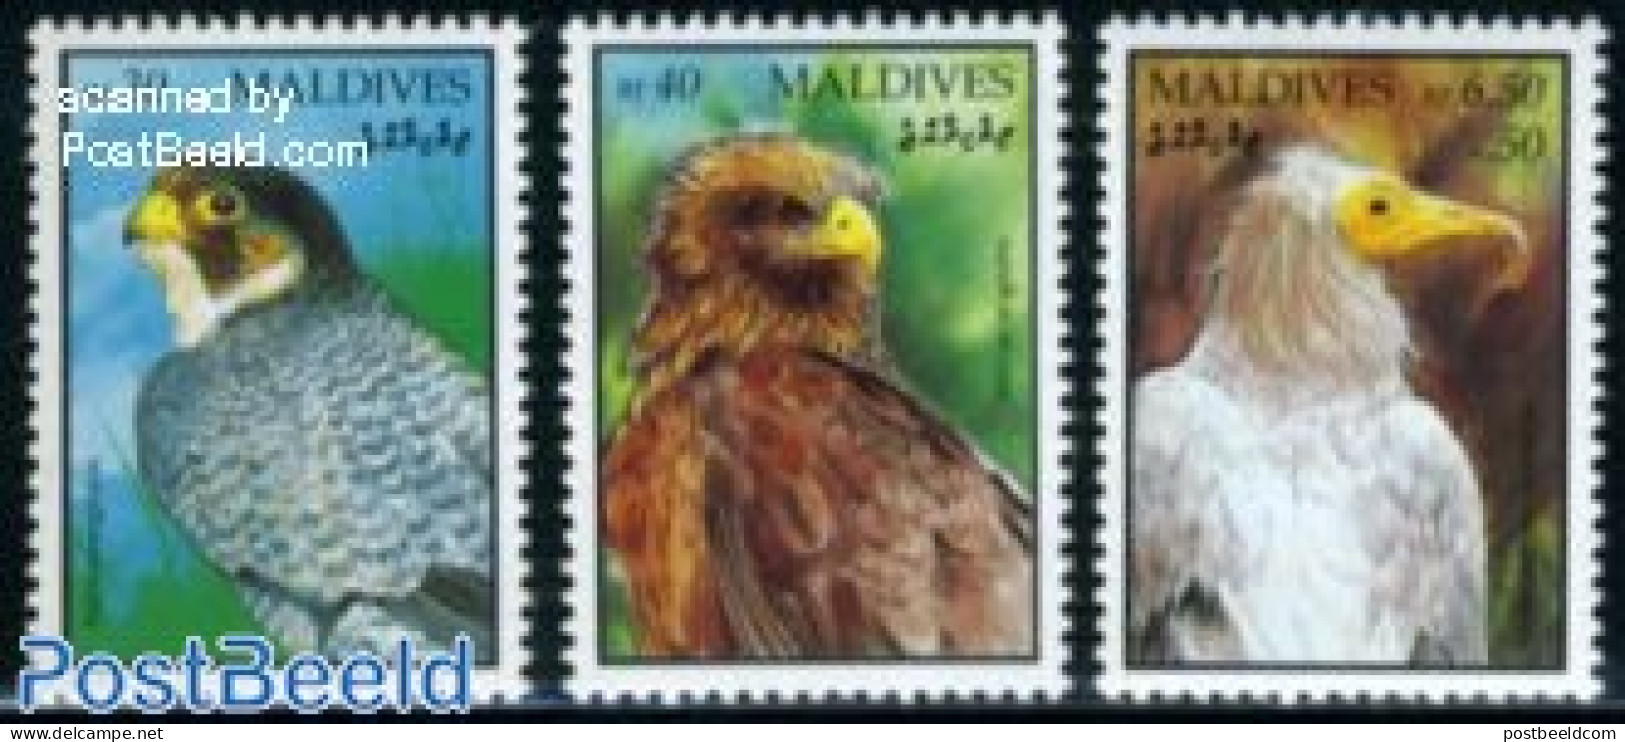 Maldives 1994 Definitives, Birds 3v, Mint NH, Nature - Birds - Birds Of Prey - Maldive (1965-...)